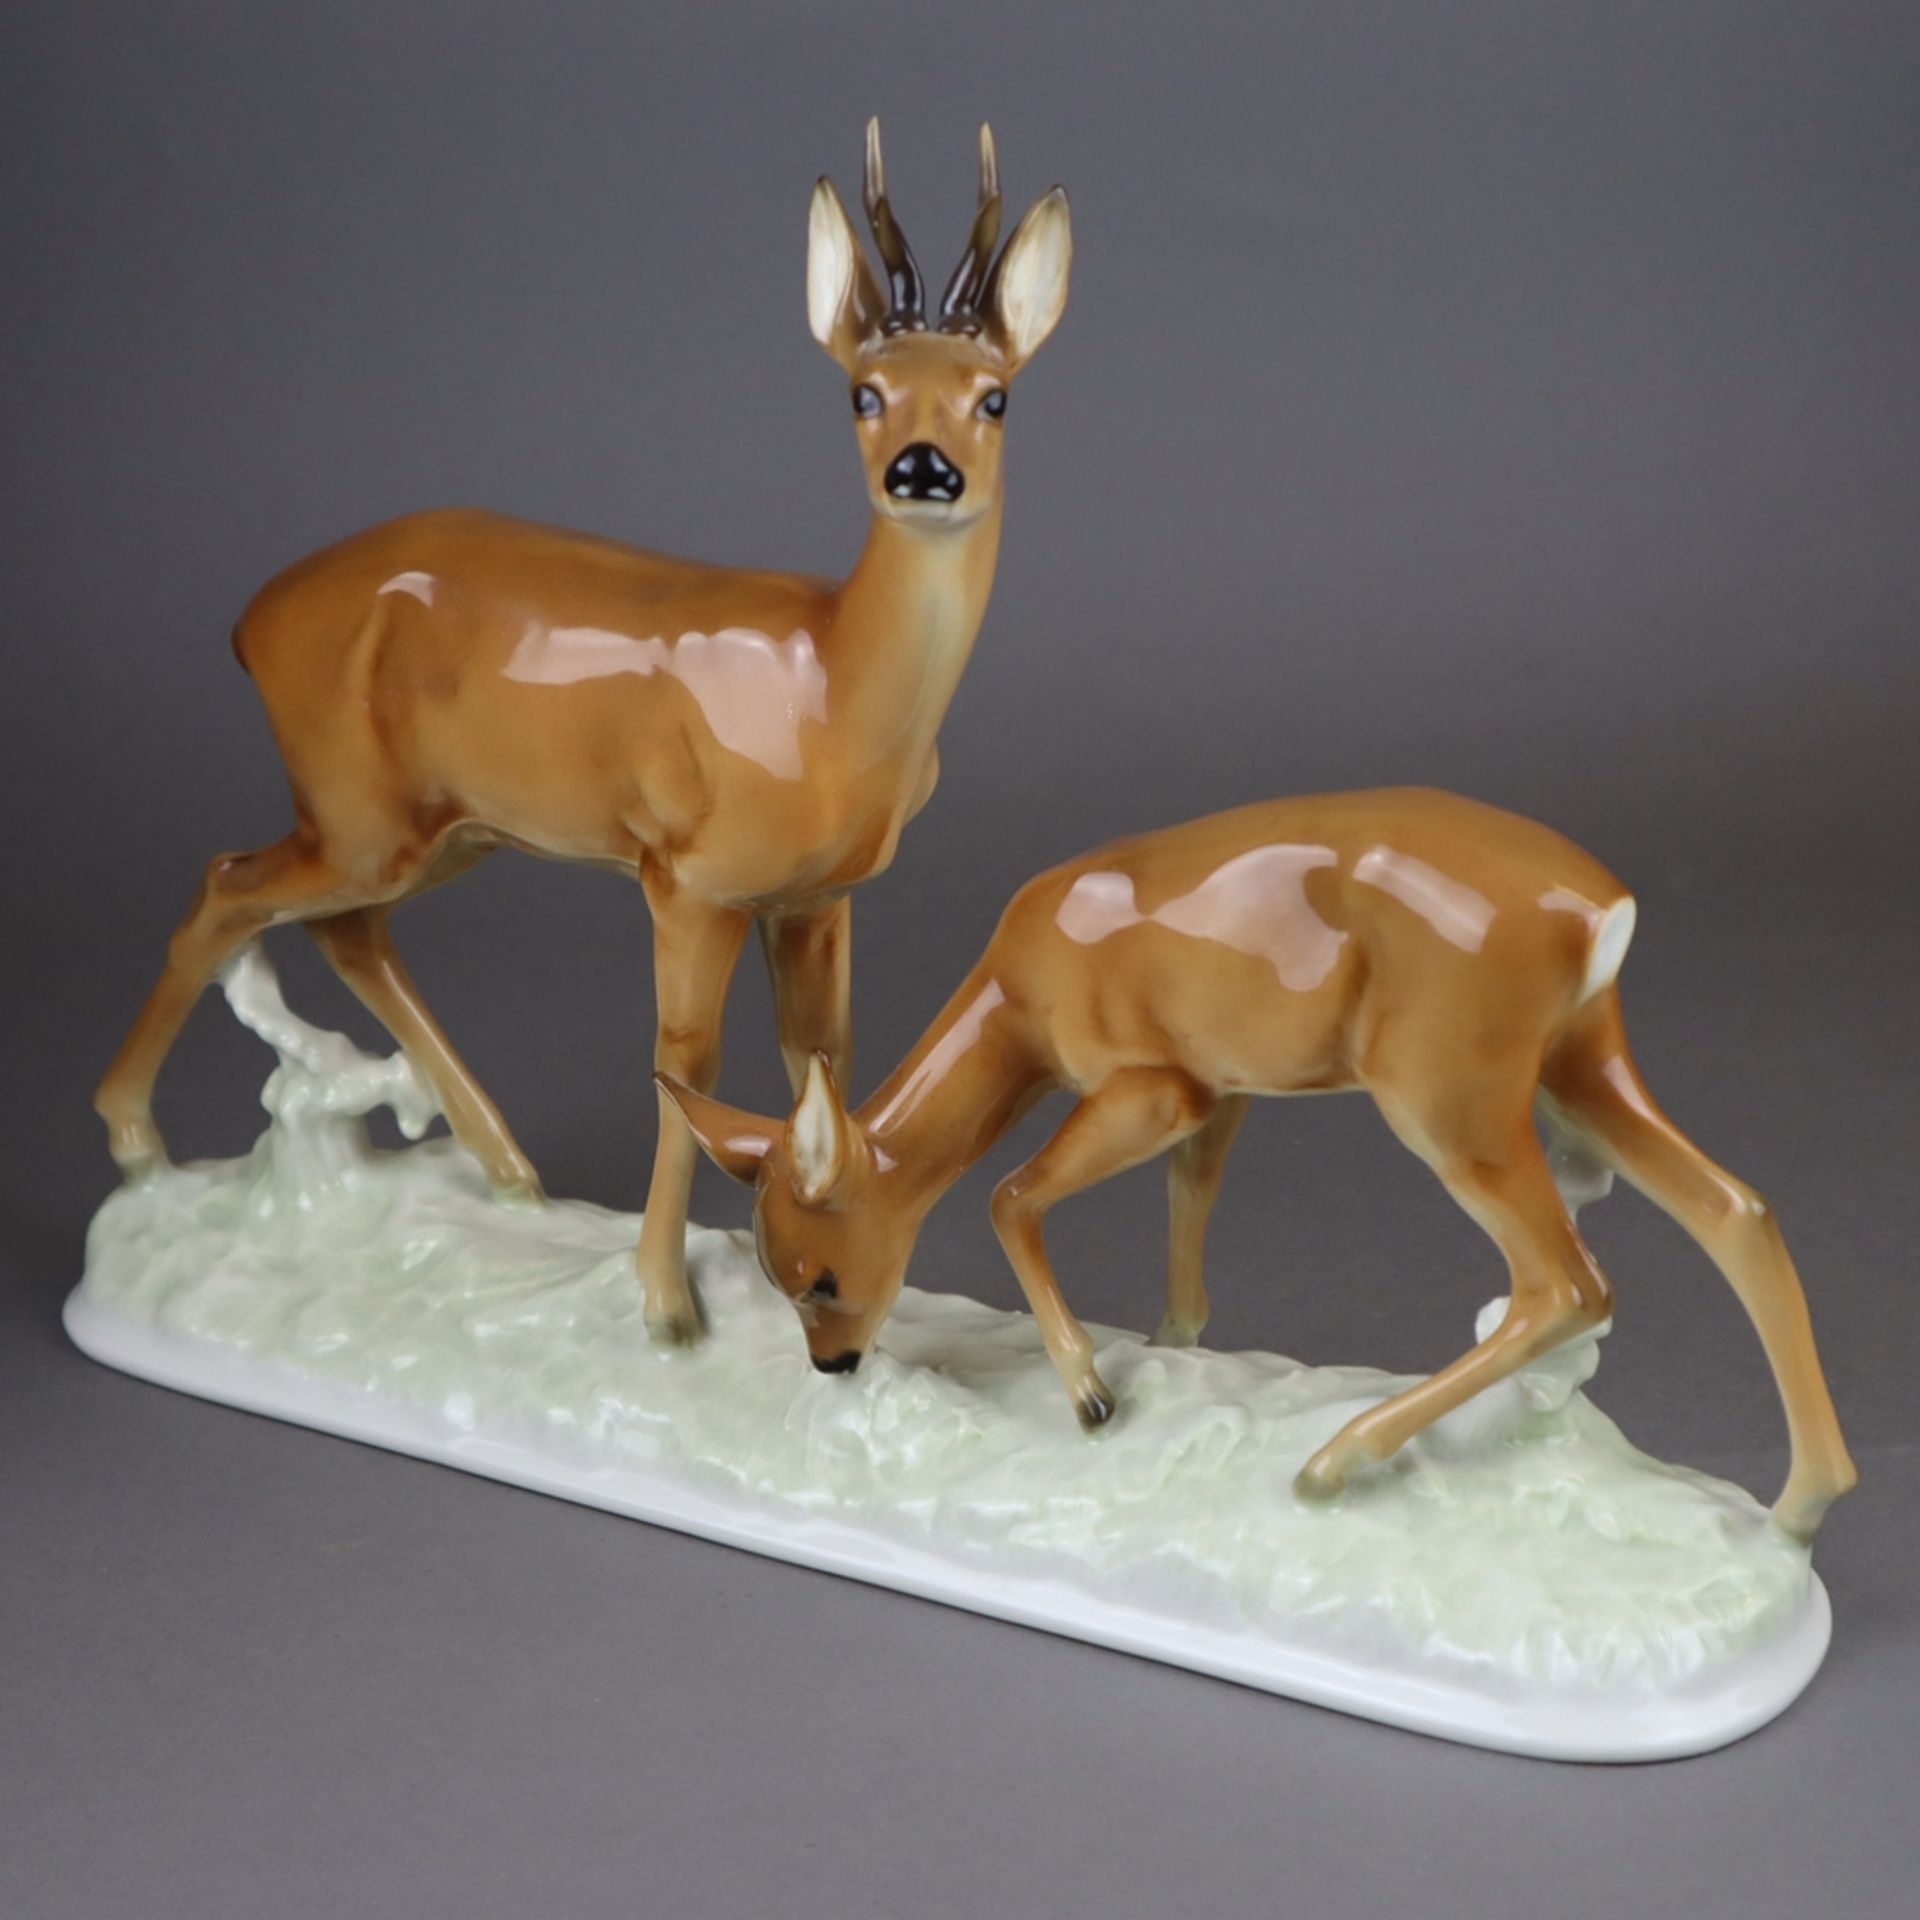 Porzellan-Tierplastik "Rehpaar" - Lorenz Hutschenreuther, Kunstabteilung Selb, Entwurf von Karl